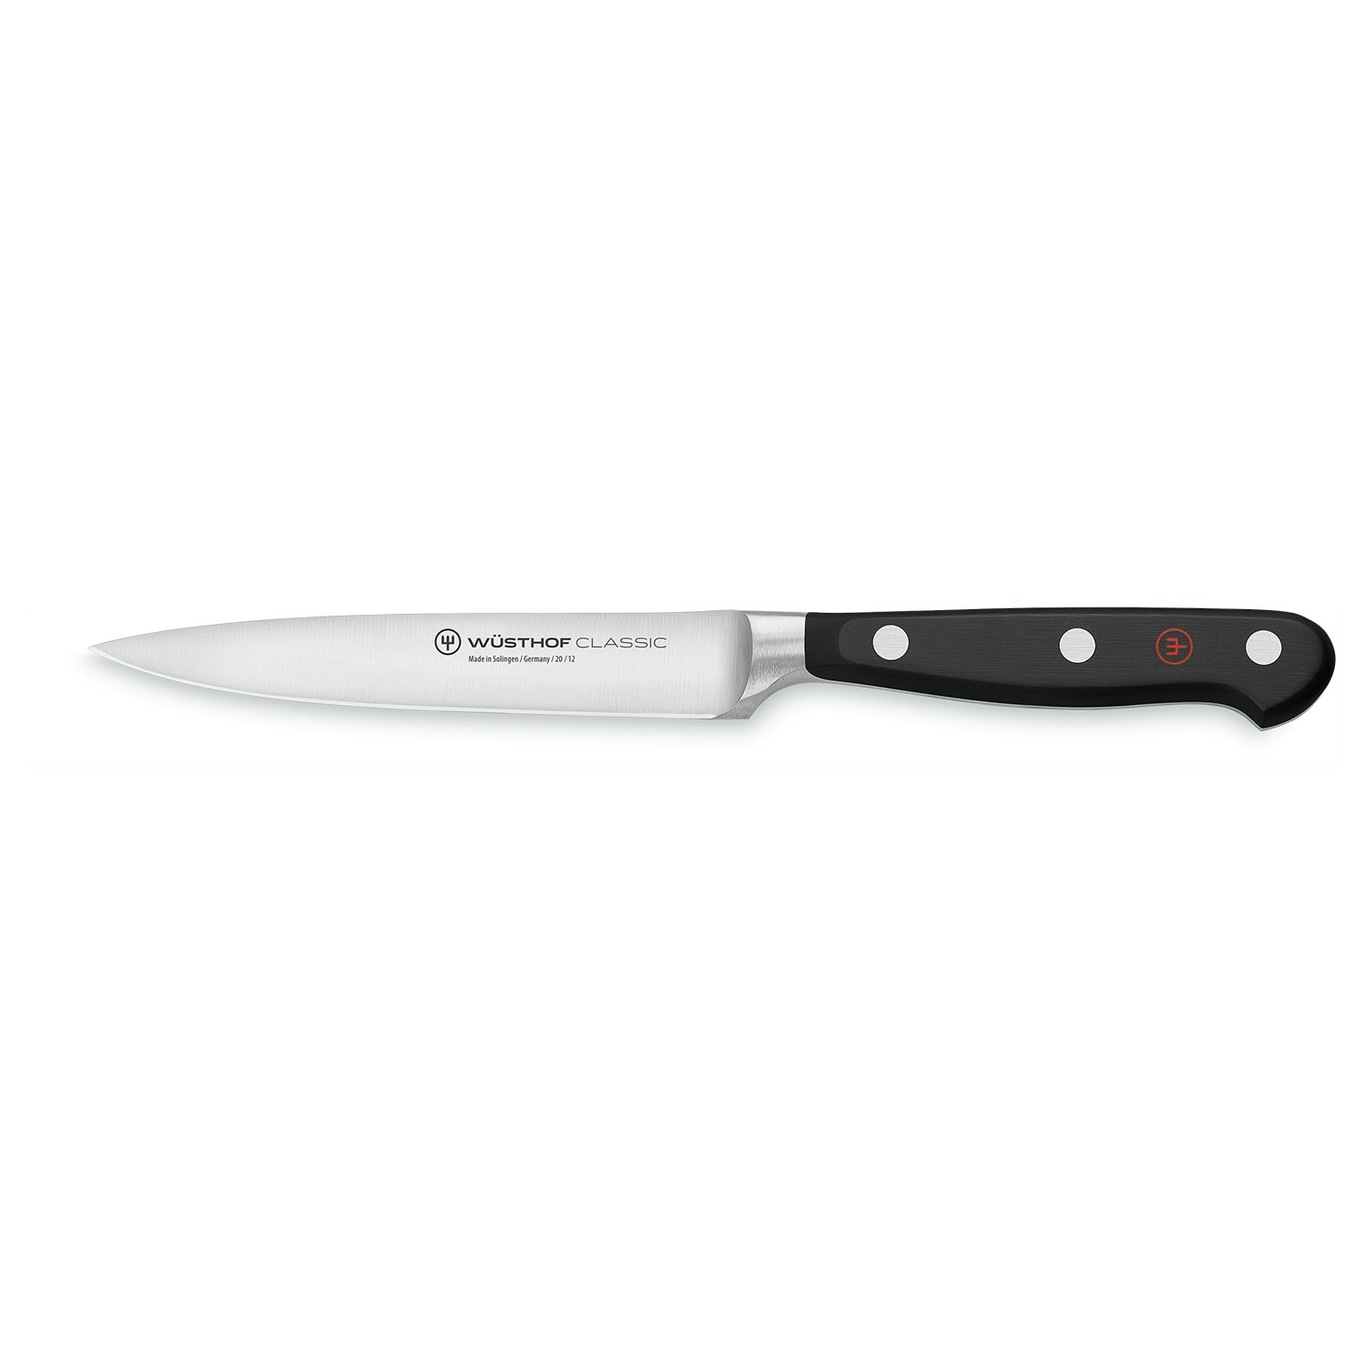 https://royaldesign.com/image/2/wusthof-classic-utility-knife-17-cm-0?w=800&quality=80